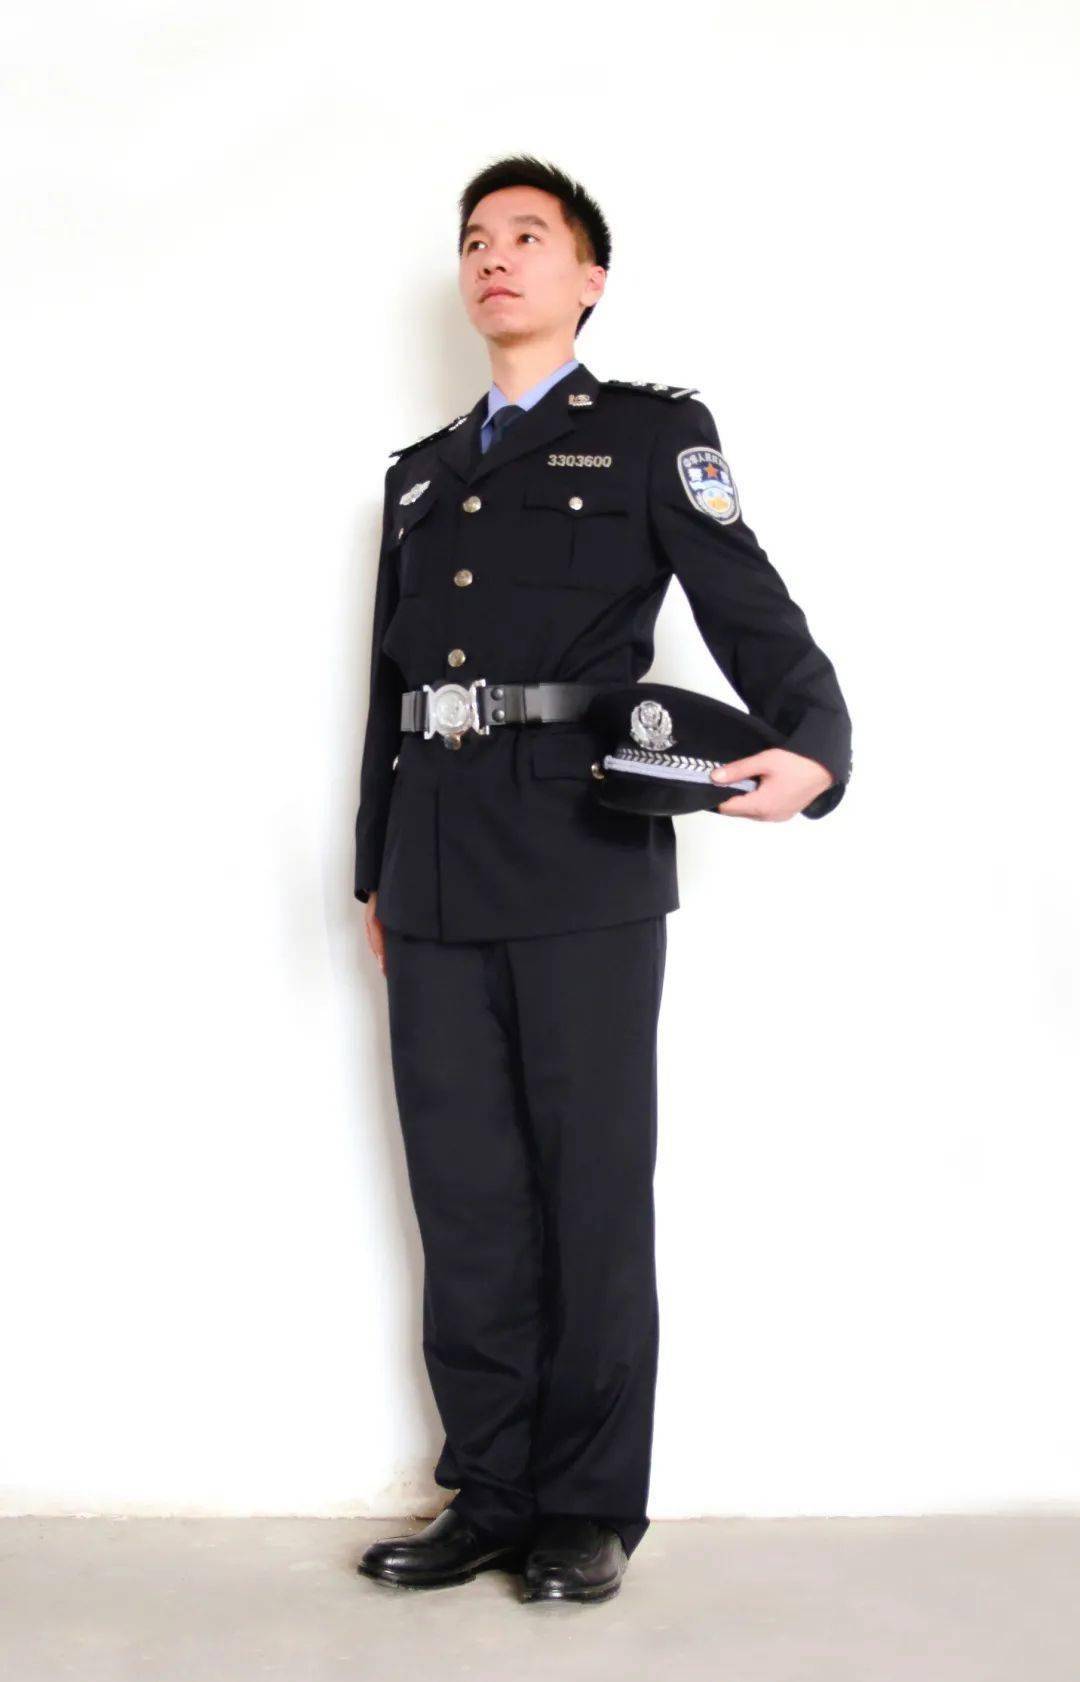 楼镇巍不同的制服,同样的守护从警18年,曾工作于余杭市公安局,杭州市